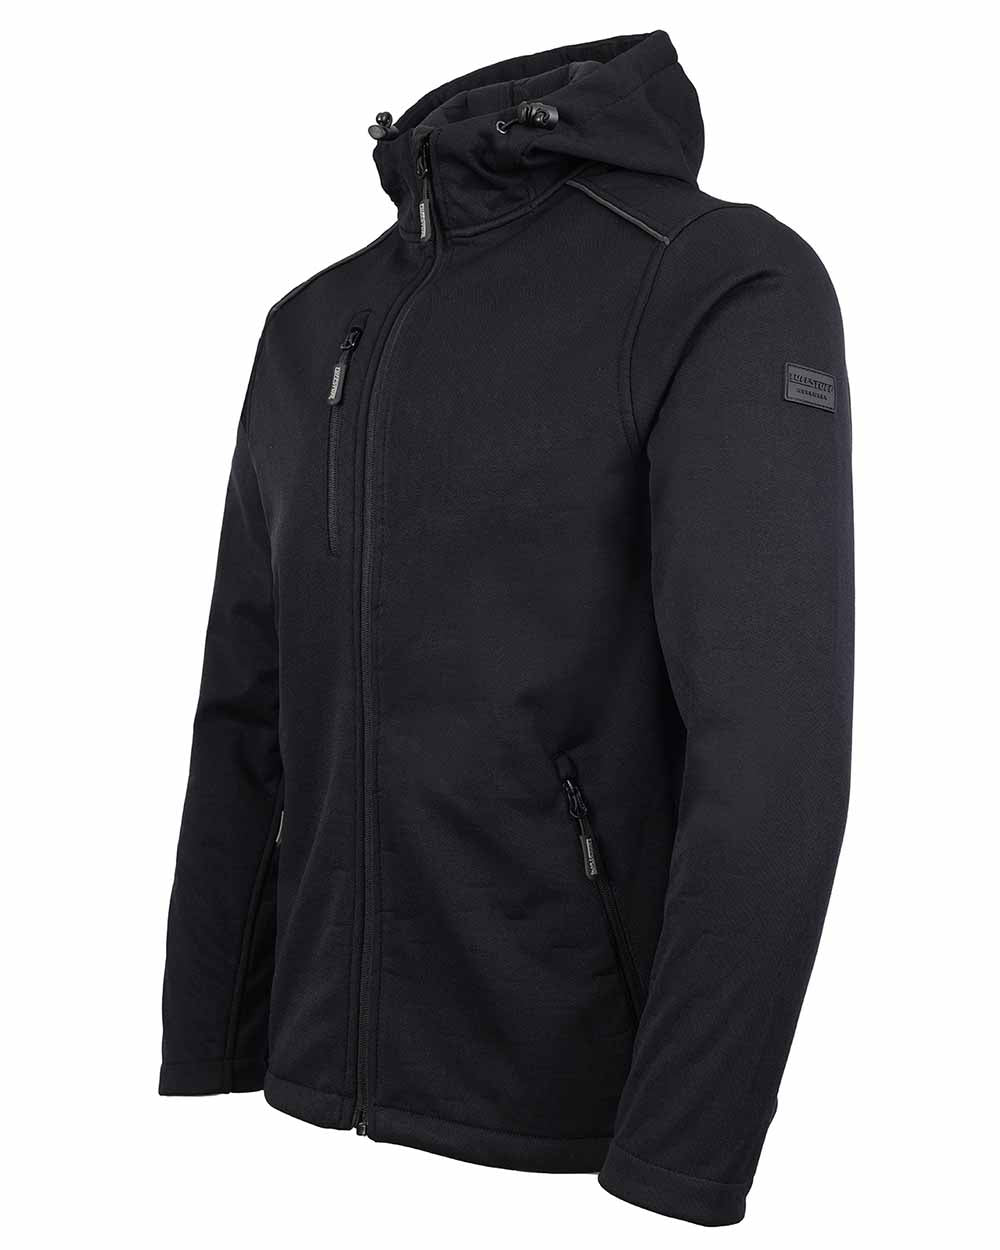 Waterproof adjustable hood TuffStuff Hale Jacket in  black 